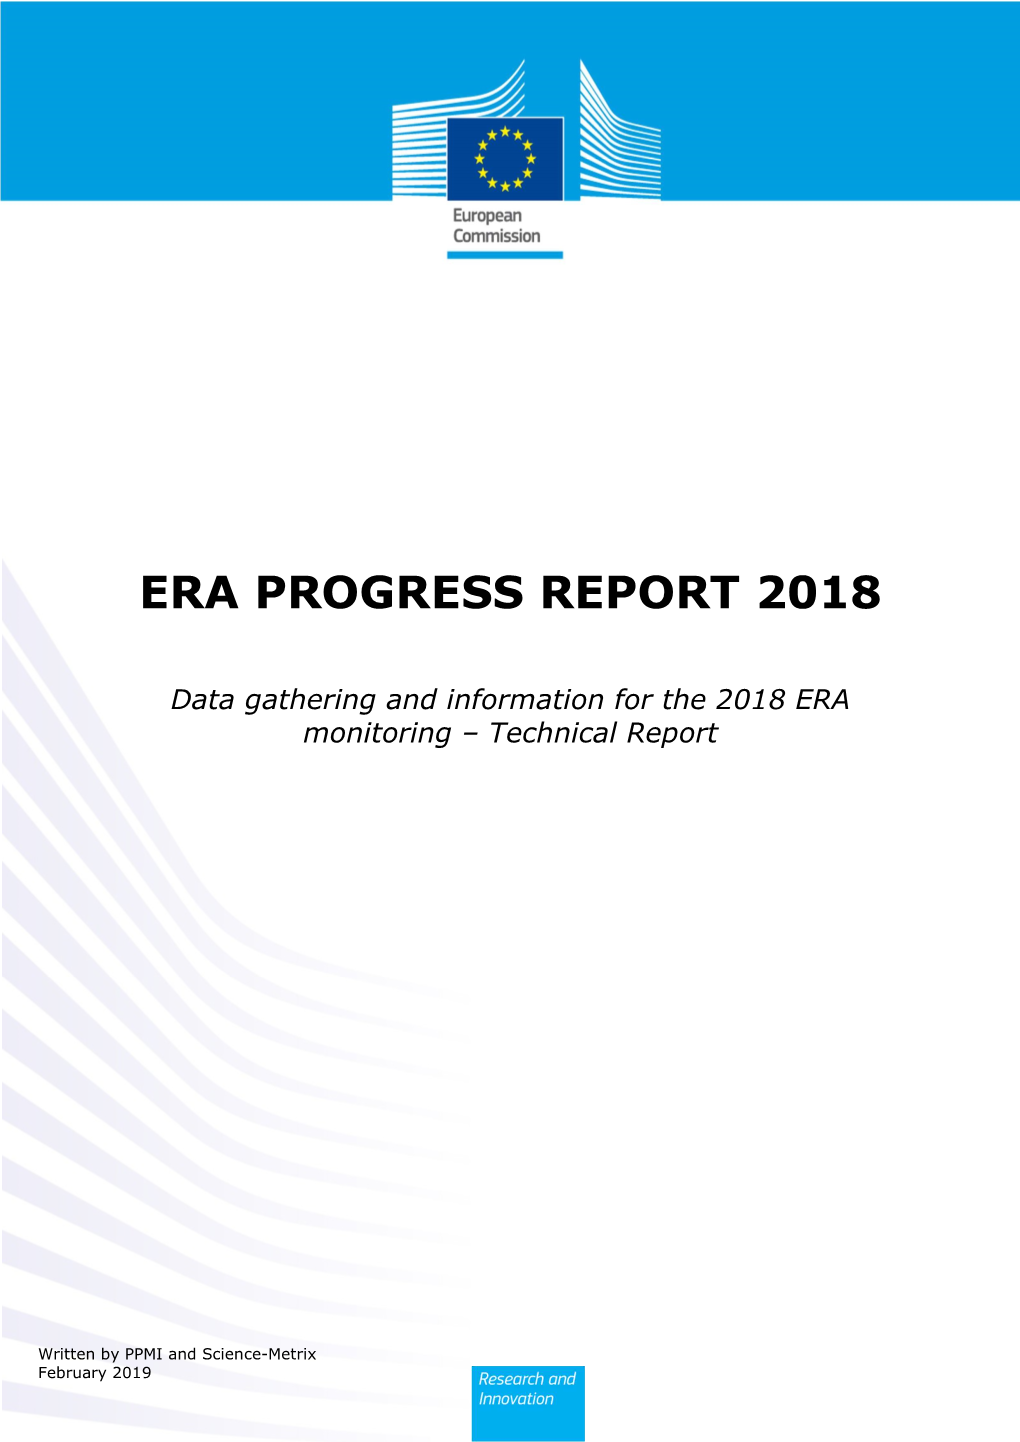 Era Progress Report 2018